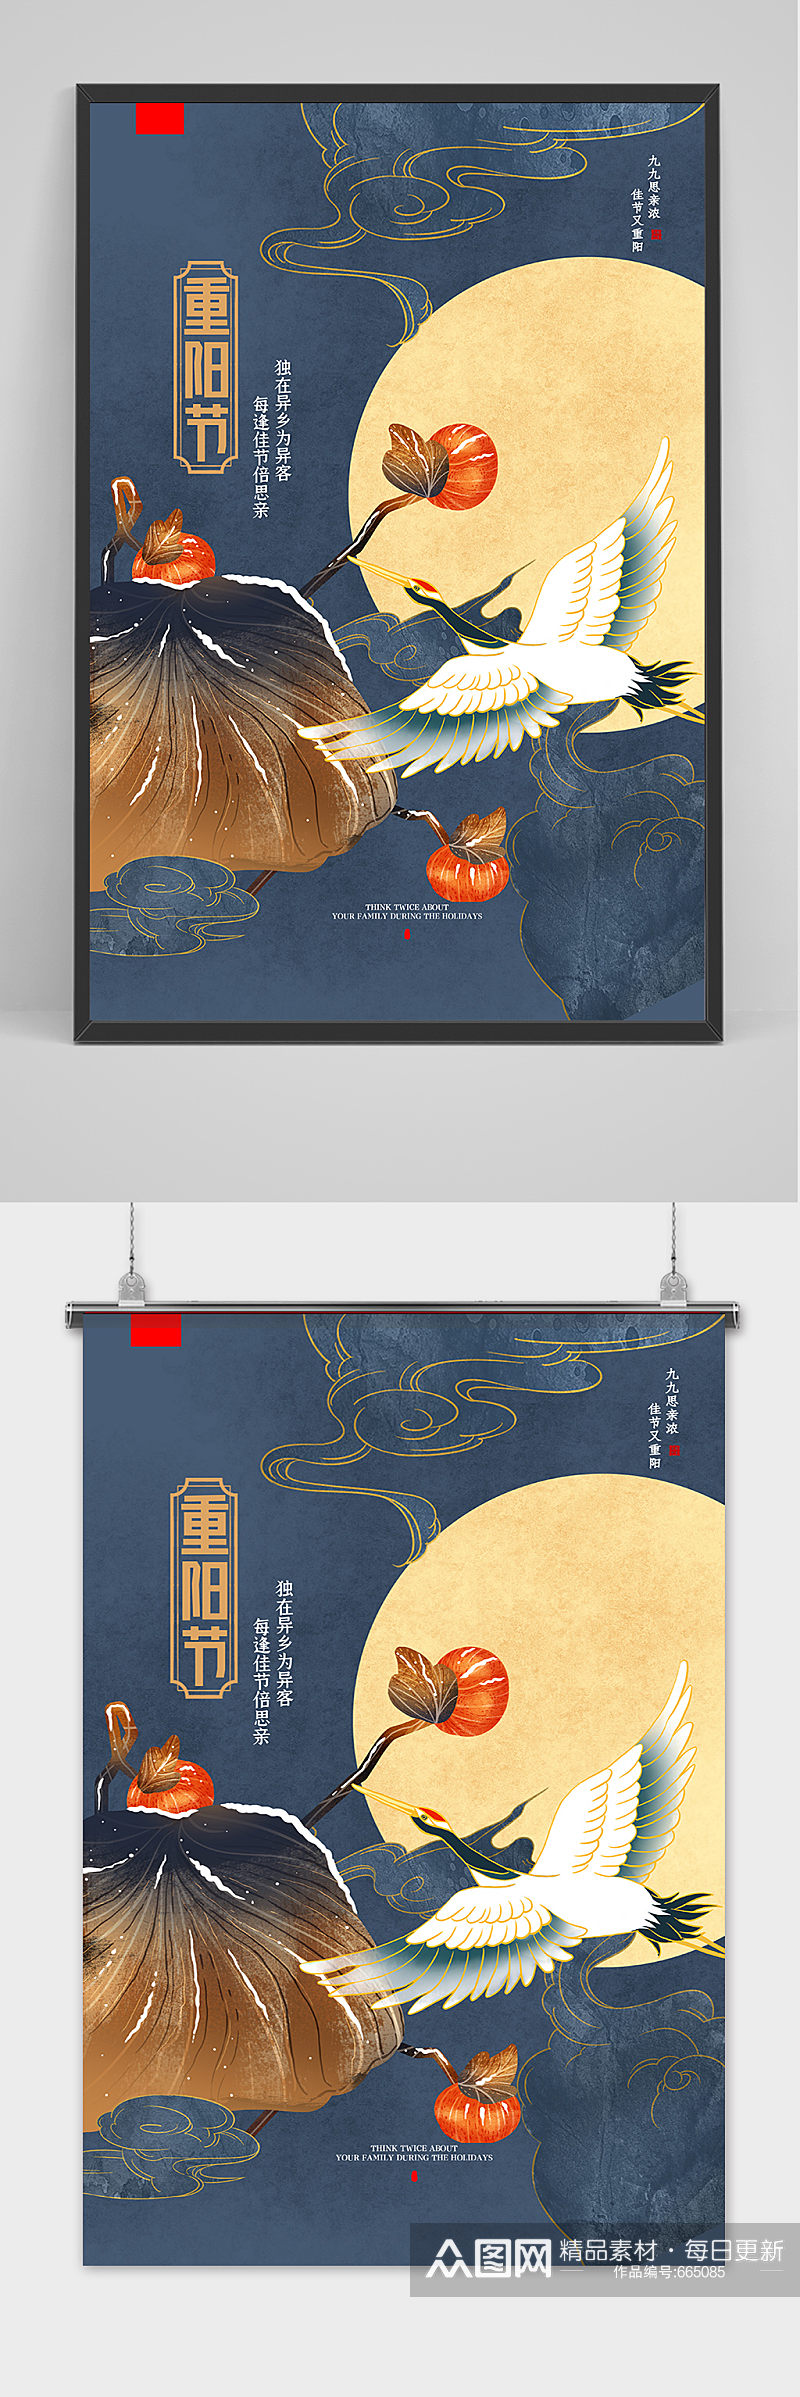 古典中国风重阳节户外海报素材